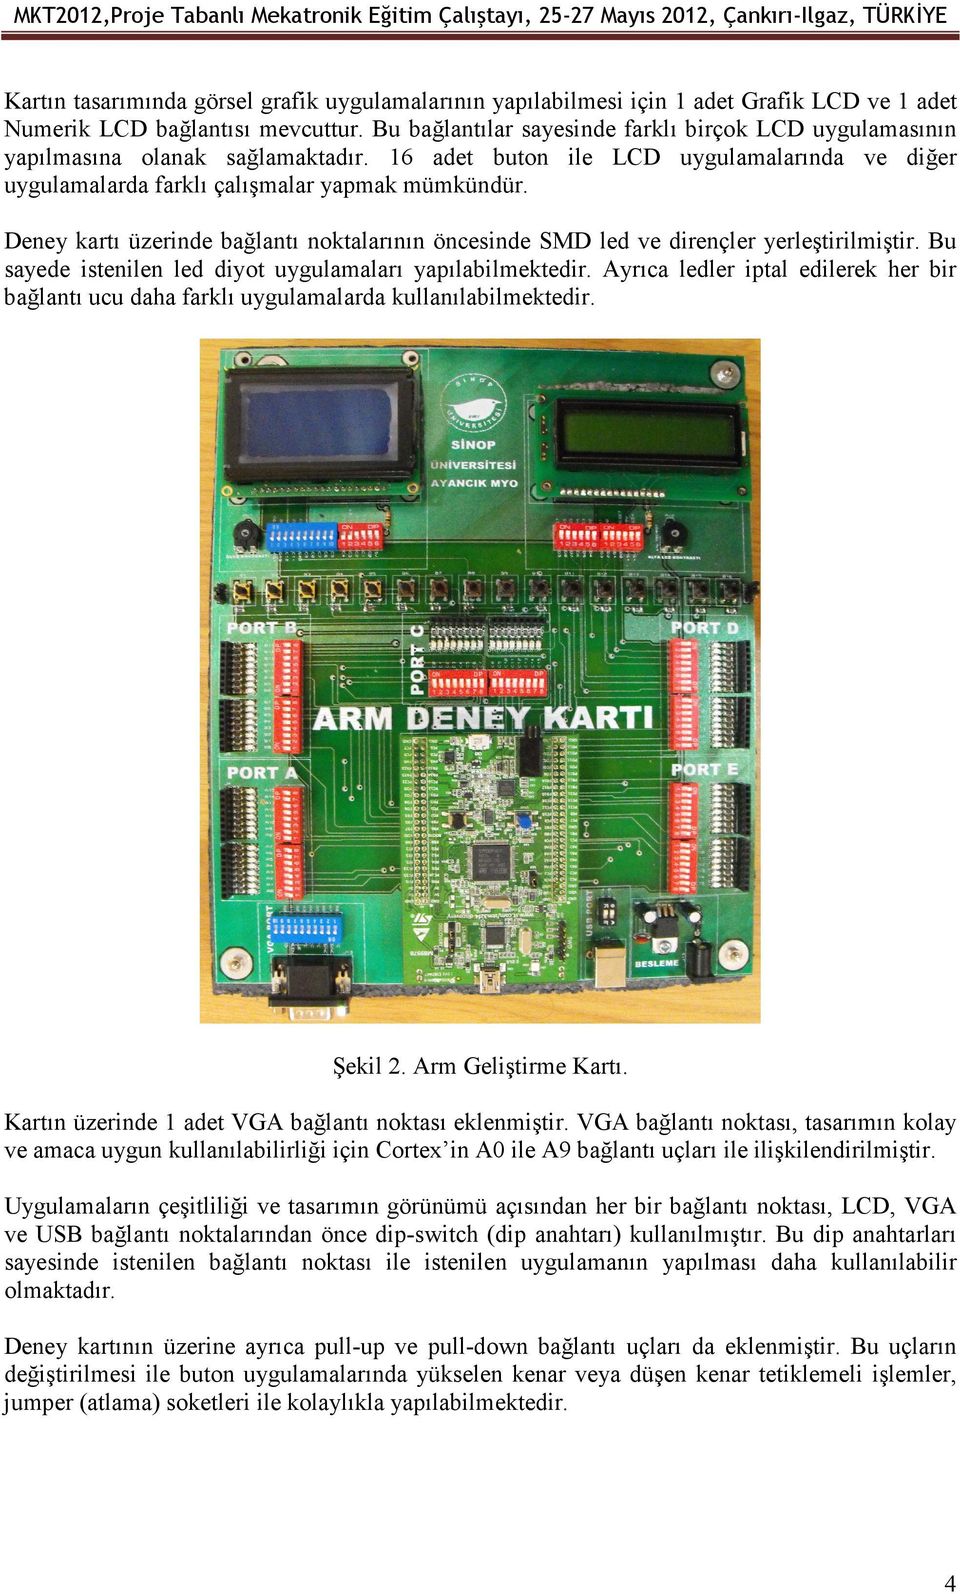 16 adet buton ile LCD uygulamalarında ve diğer uygulamalarda farklı çalışmalar yapmak mümkündür. Deney kartı üzerinde bağlantı noktalarının öncesinde SMD led ve dirençler yerleştirilmiştir.